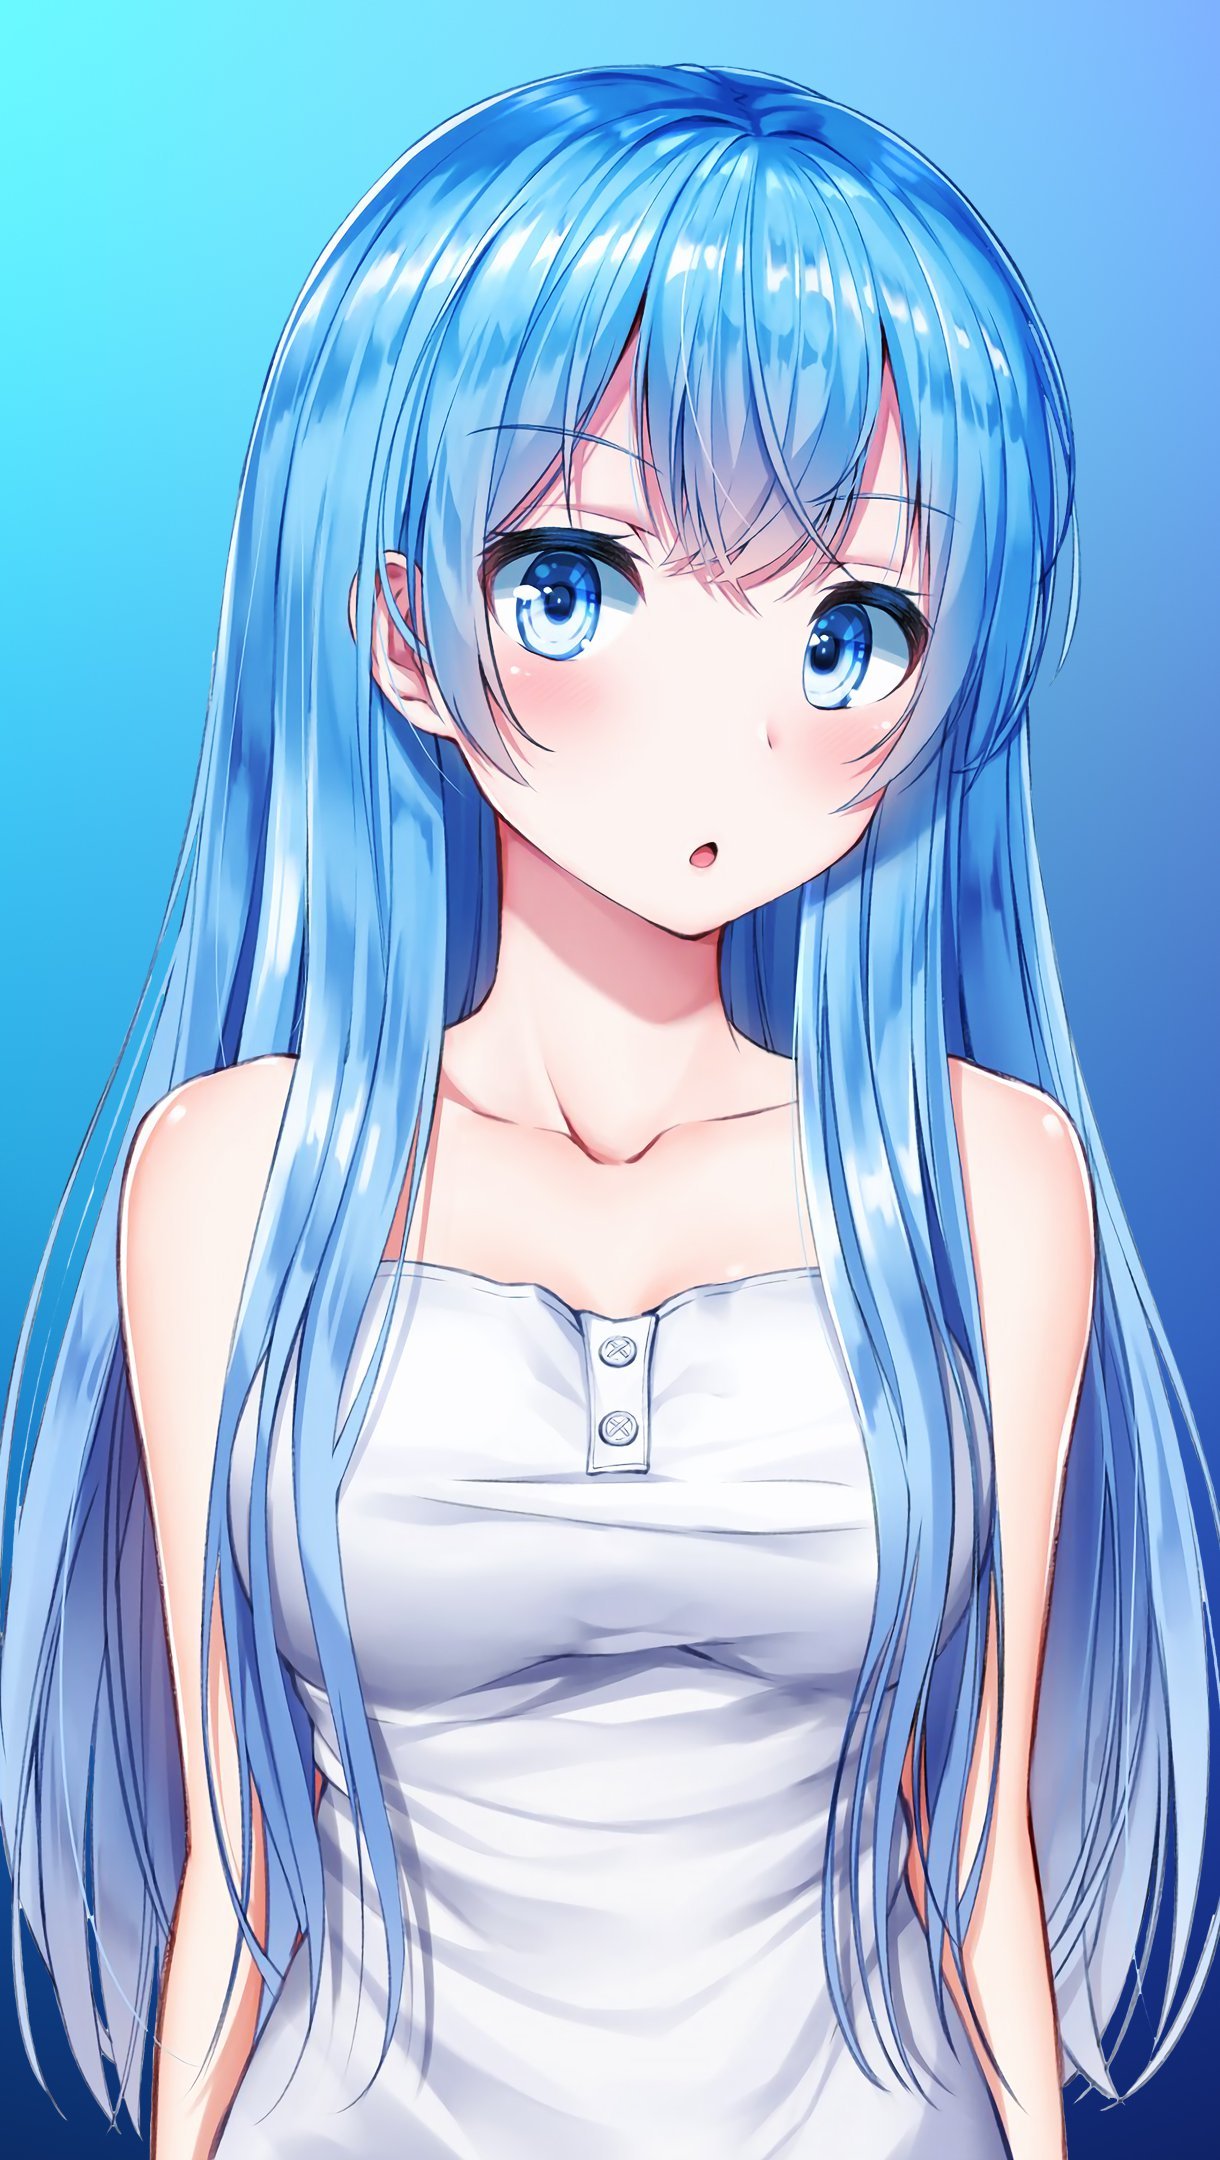 Fondos de pantalla Chica Anime azul Vertical